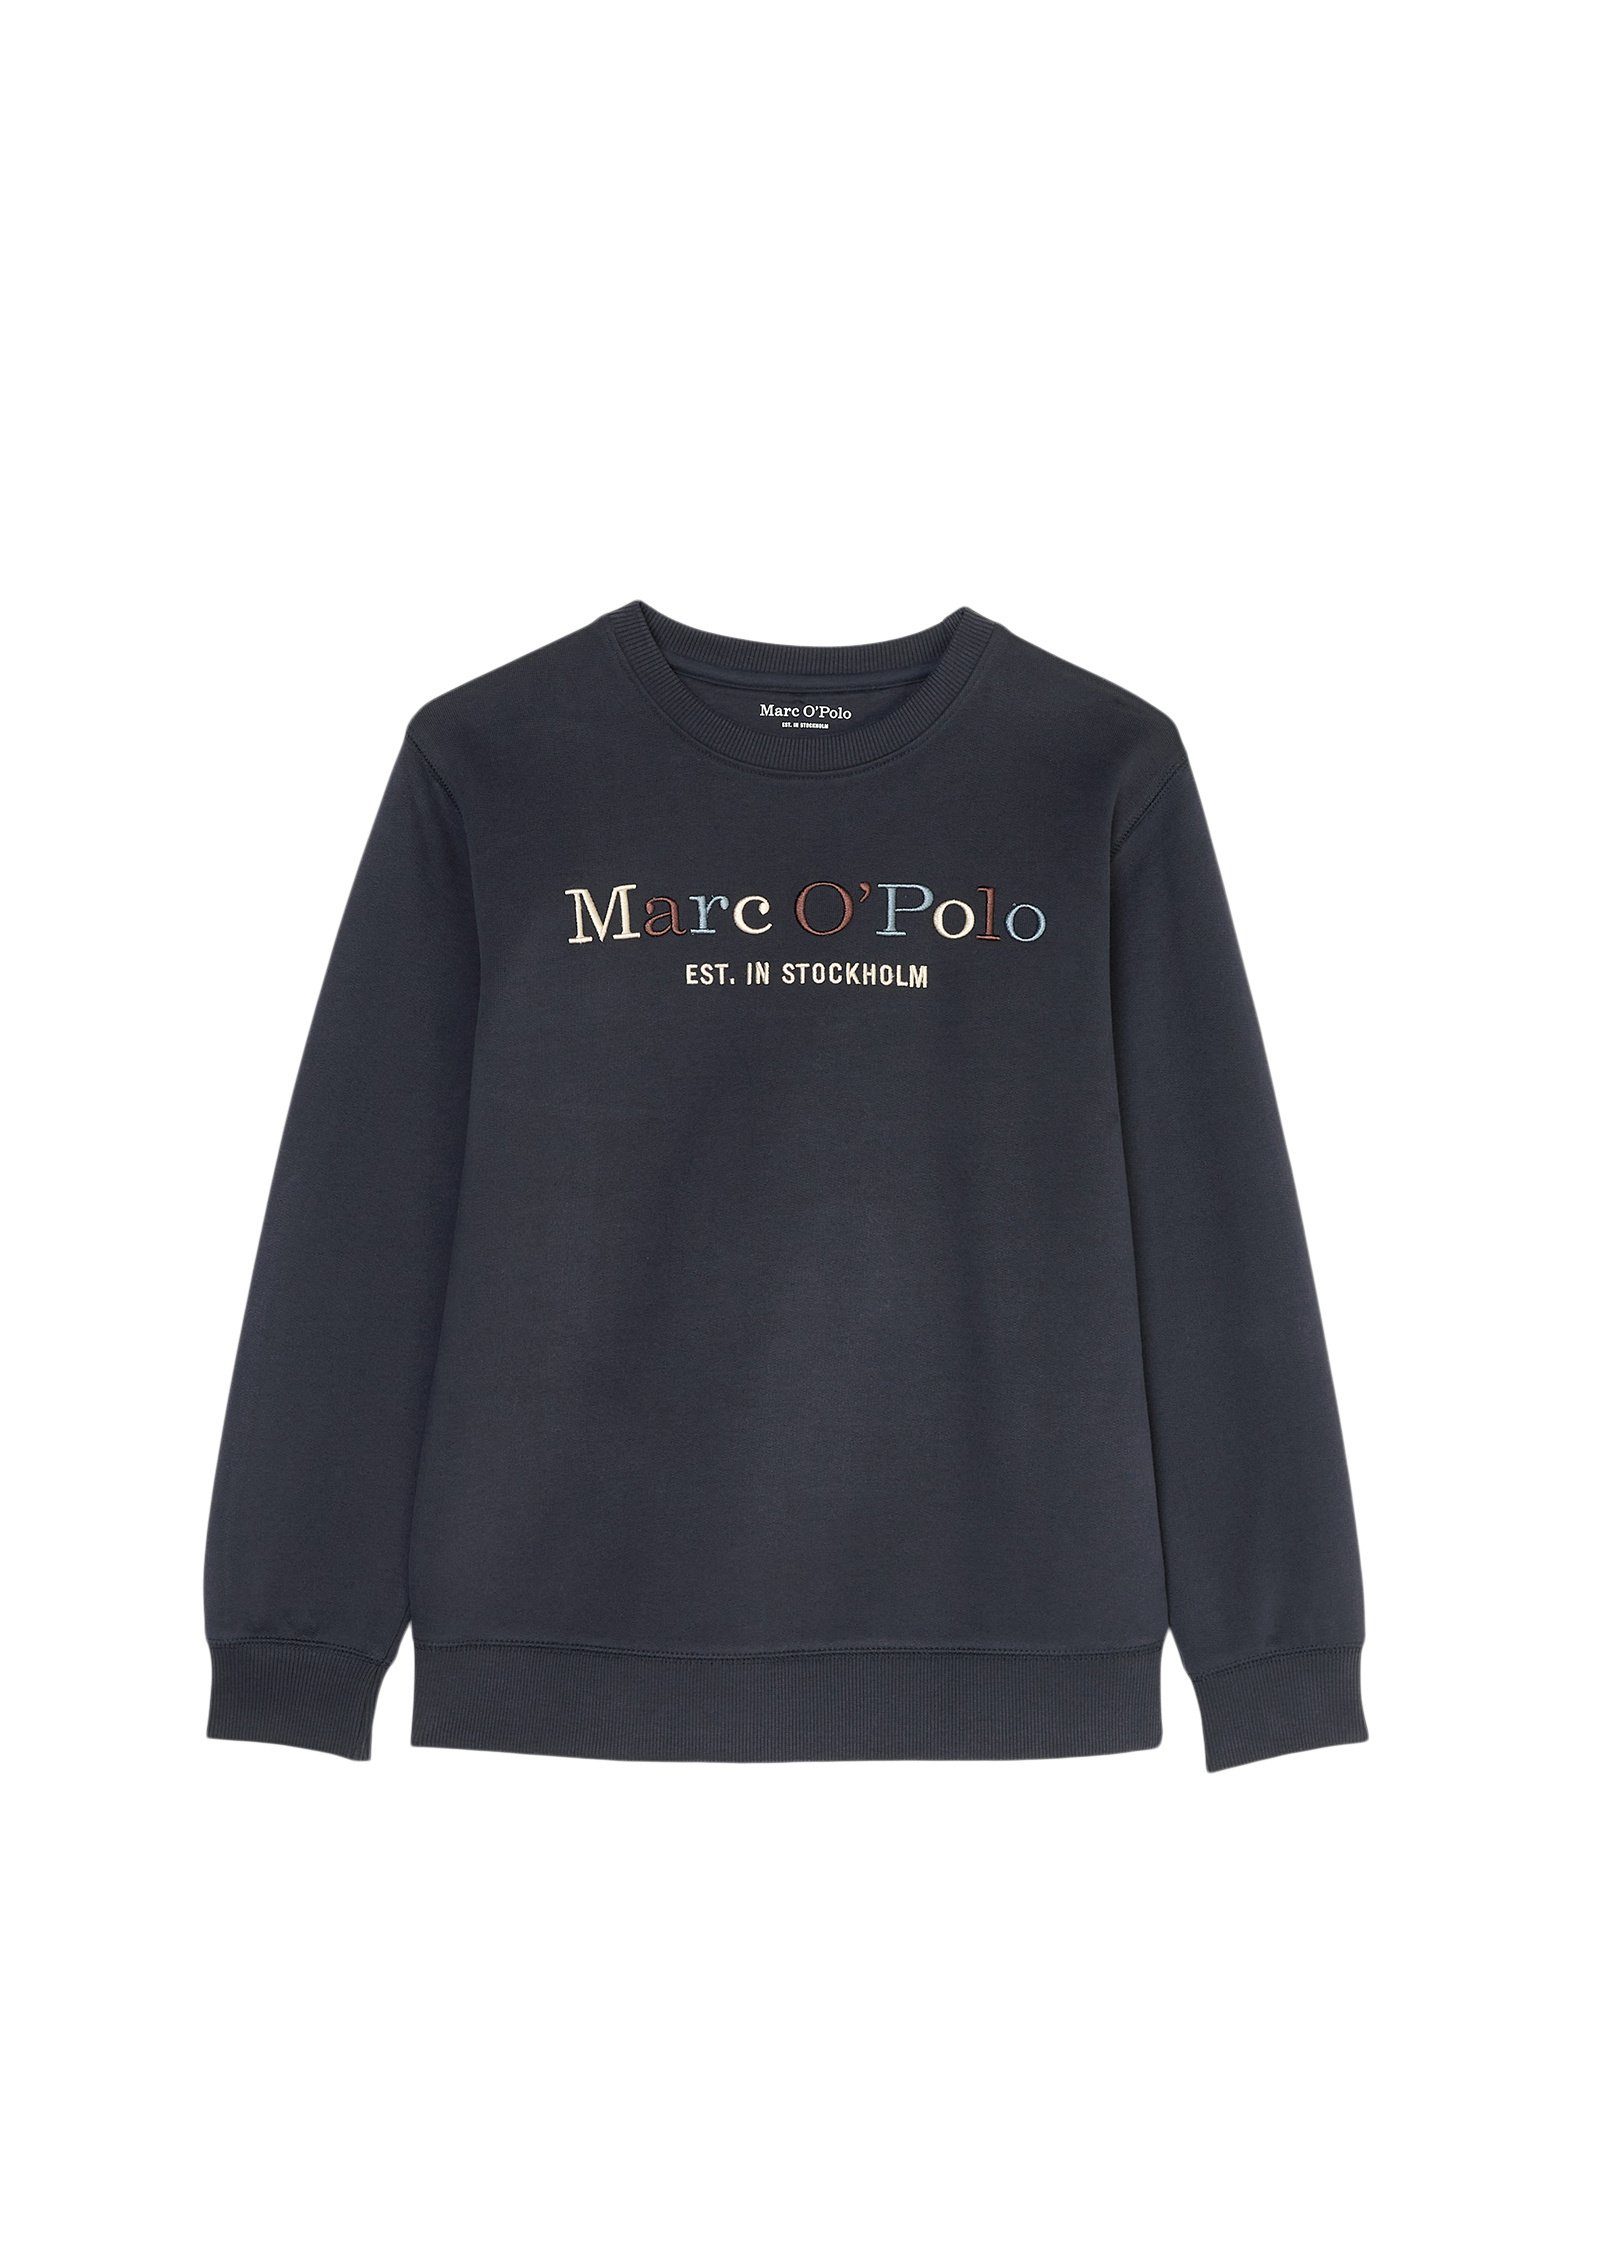 O'Polo blau aus Bio-Baumwolle Sweatshirt Marc